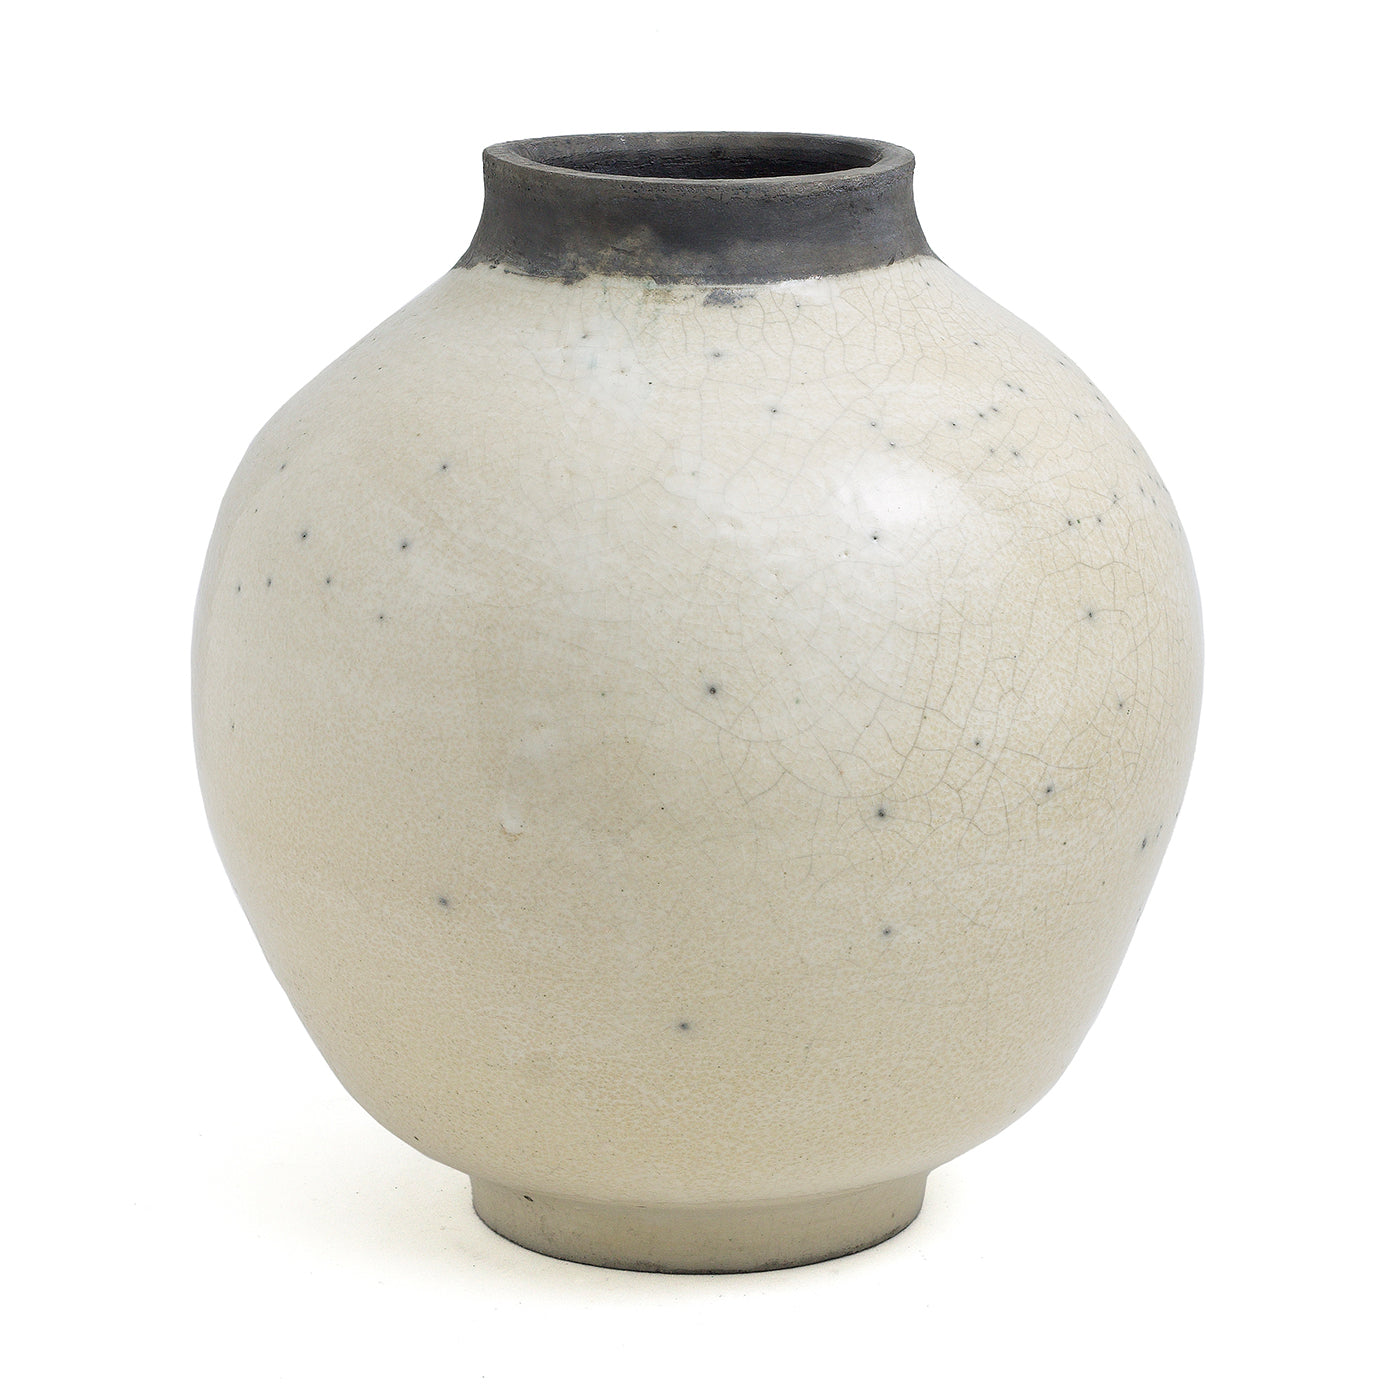 SHADOW SCULPTURE Vase #1 - Alternative view 4